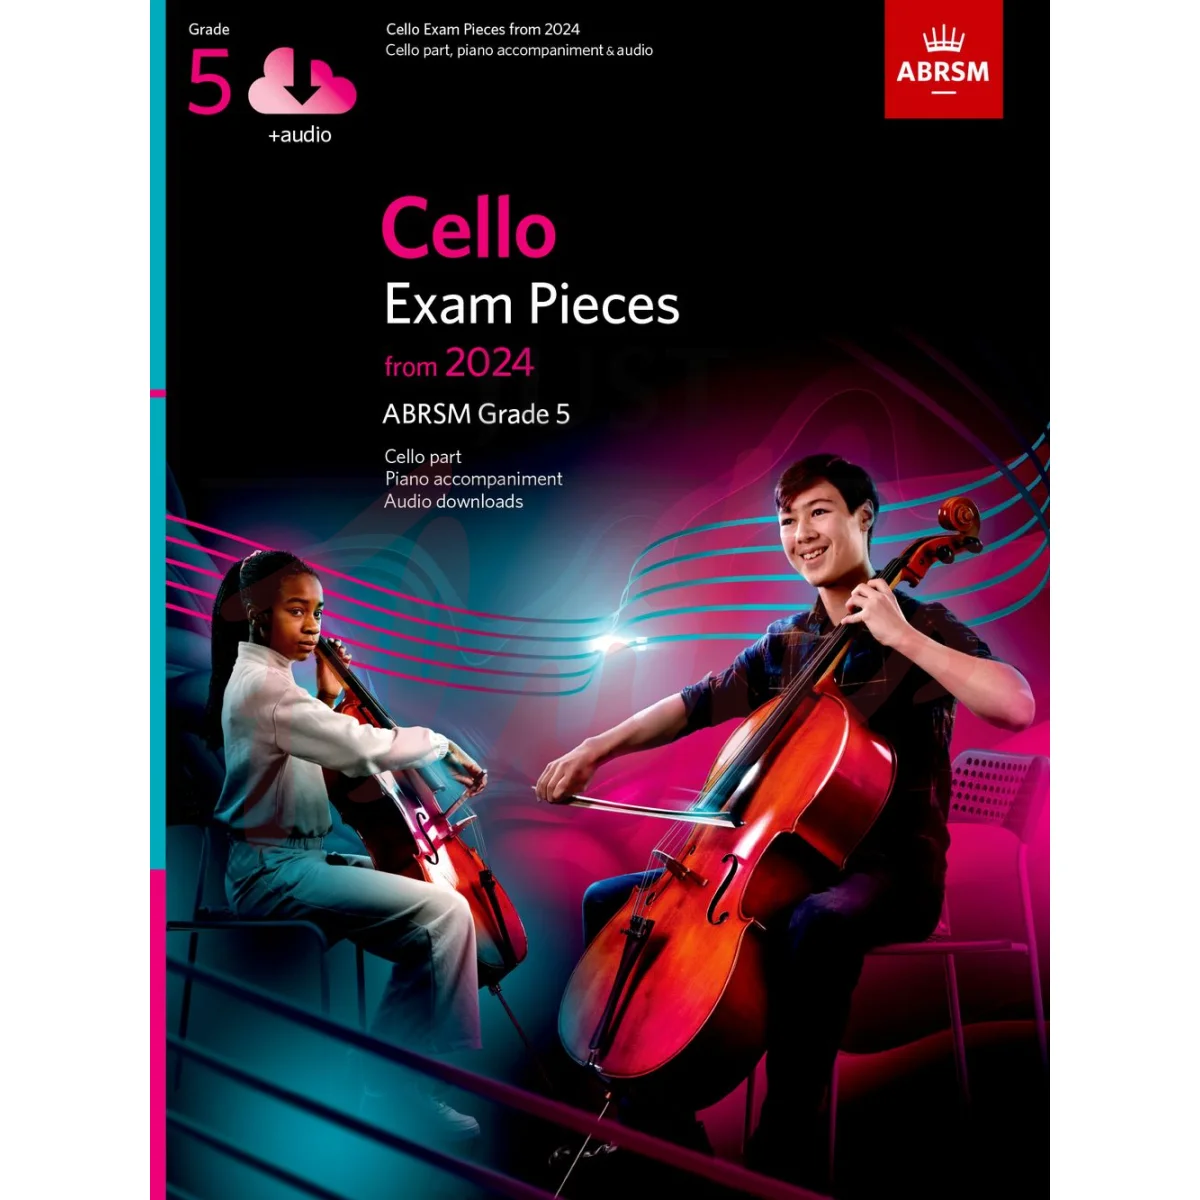 Cello Exam Pieces from 2024, Grade 5